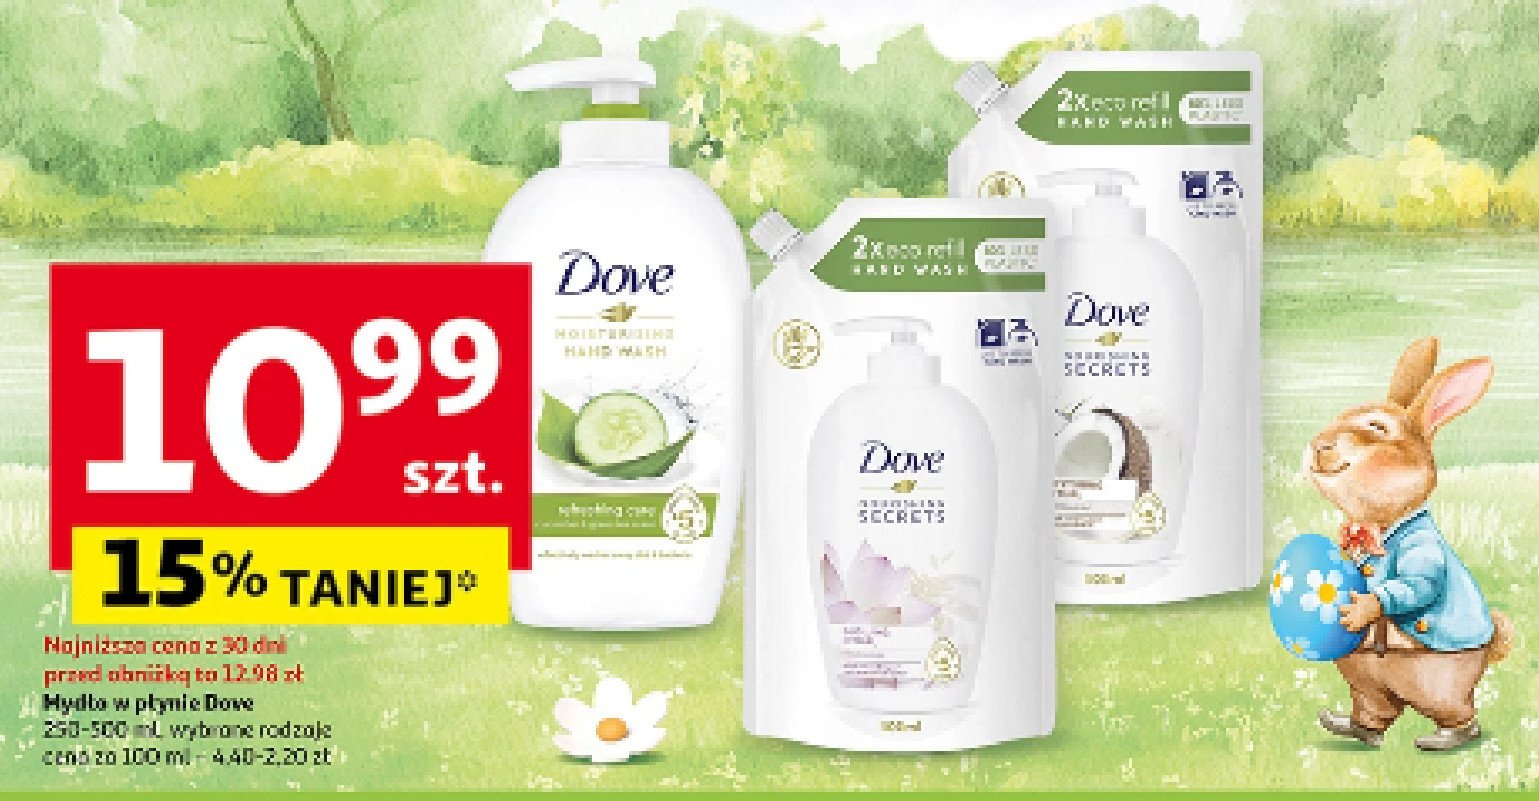 Mydło w płynie restoring ritual Dove nourishing secrets promocja w Auchan